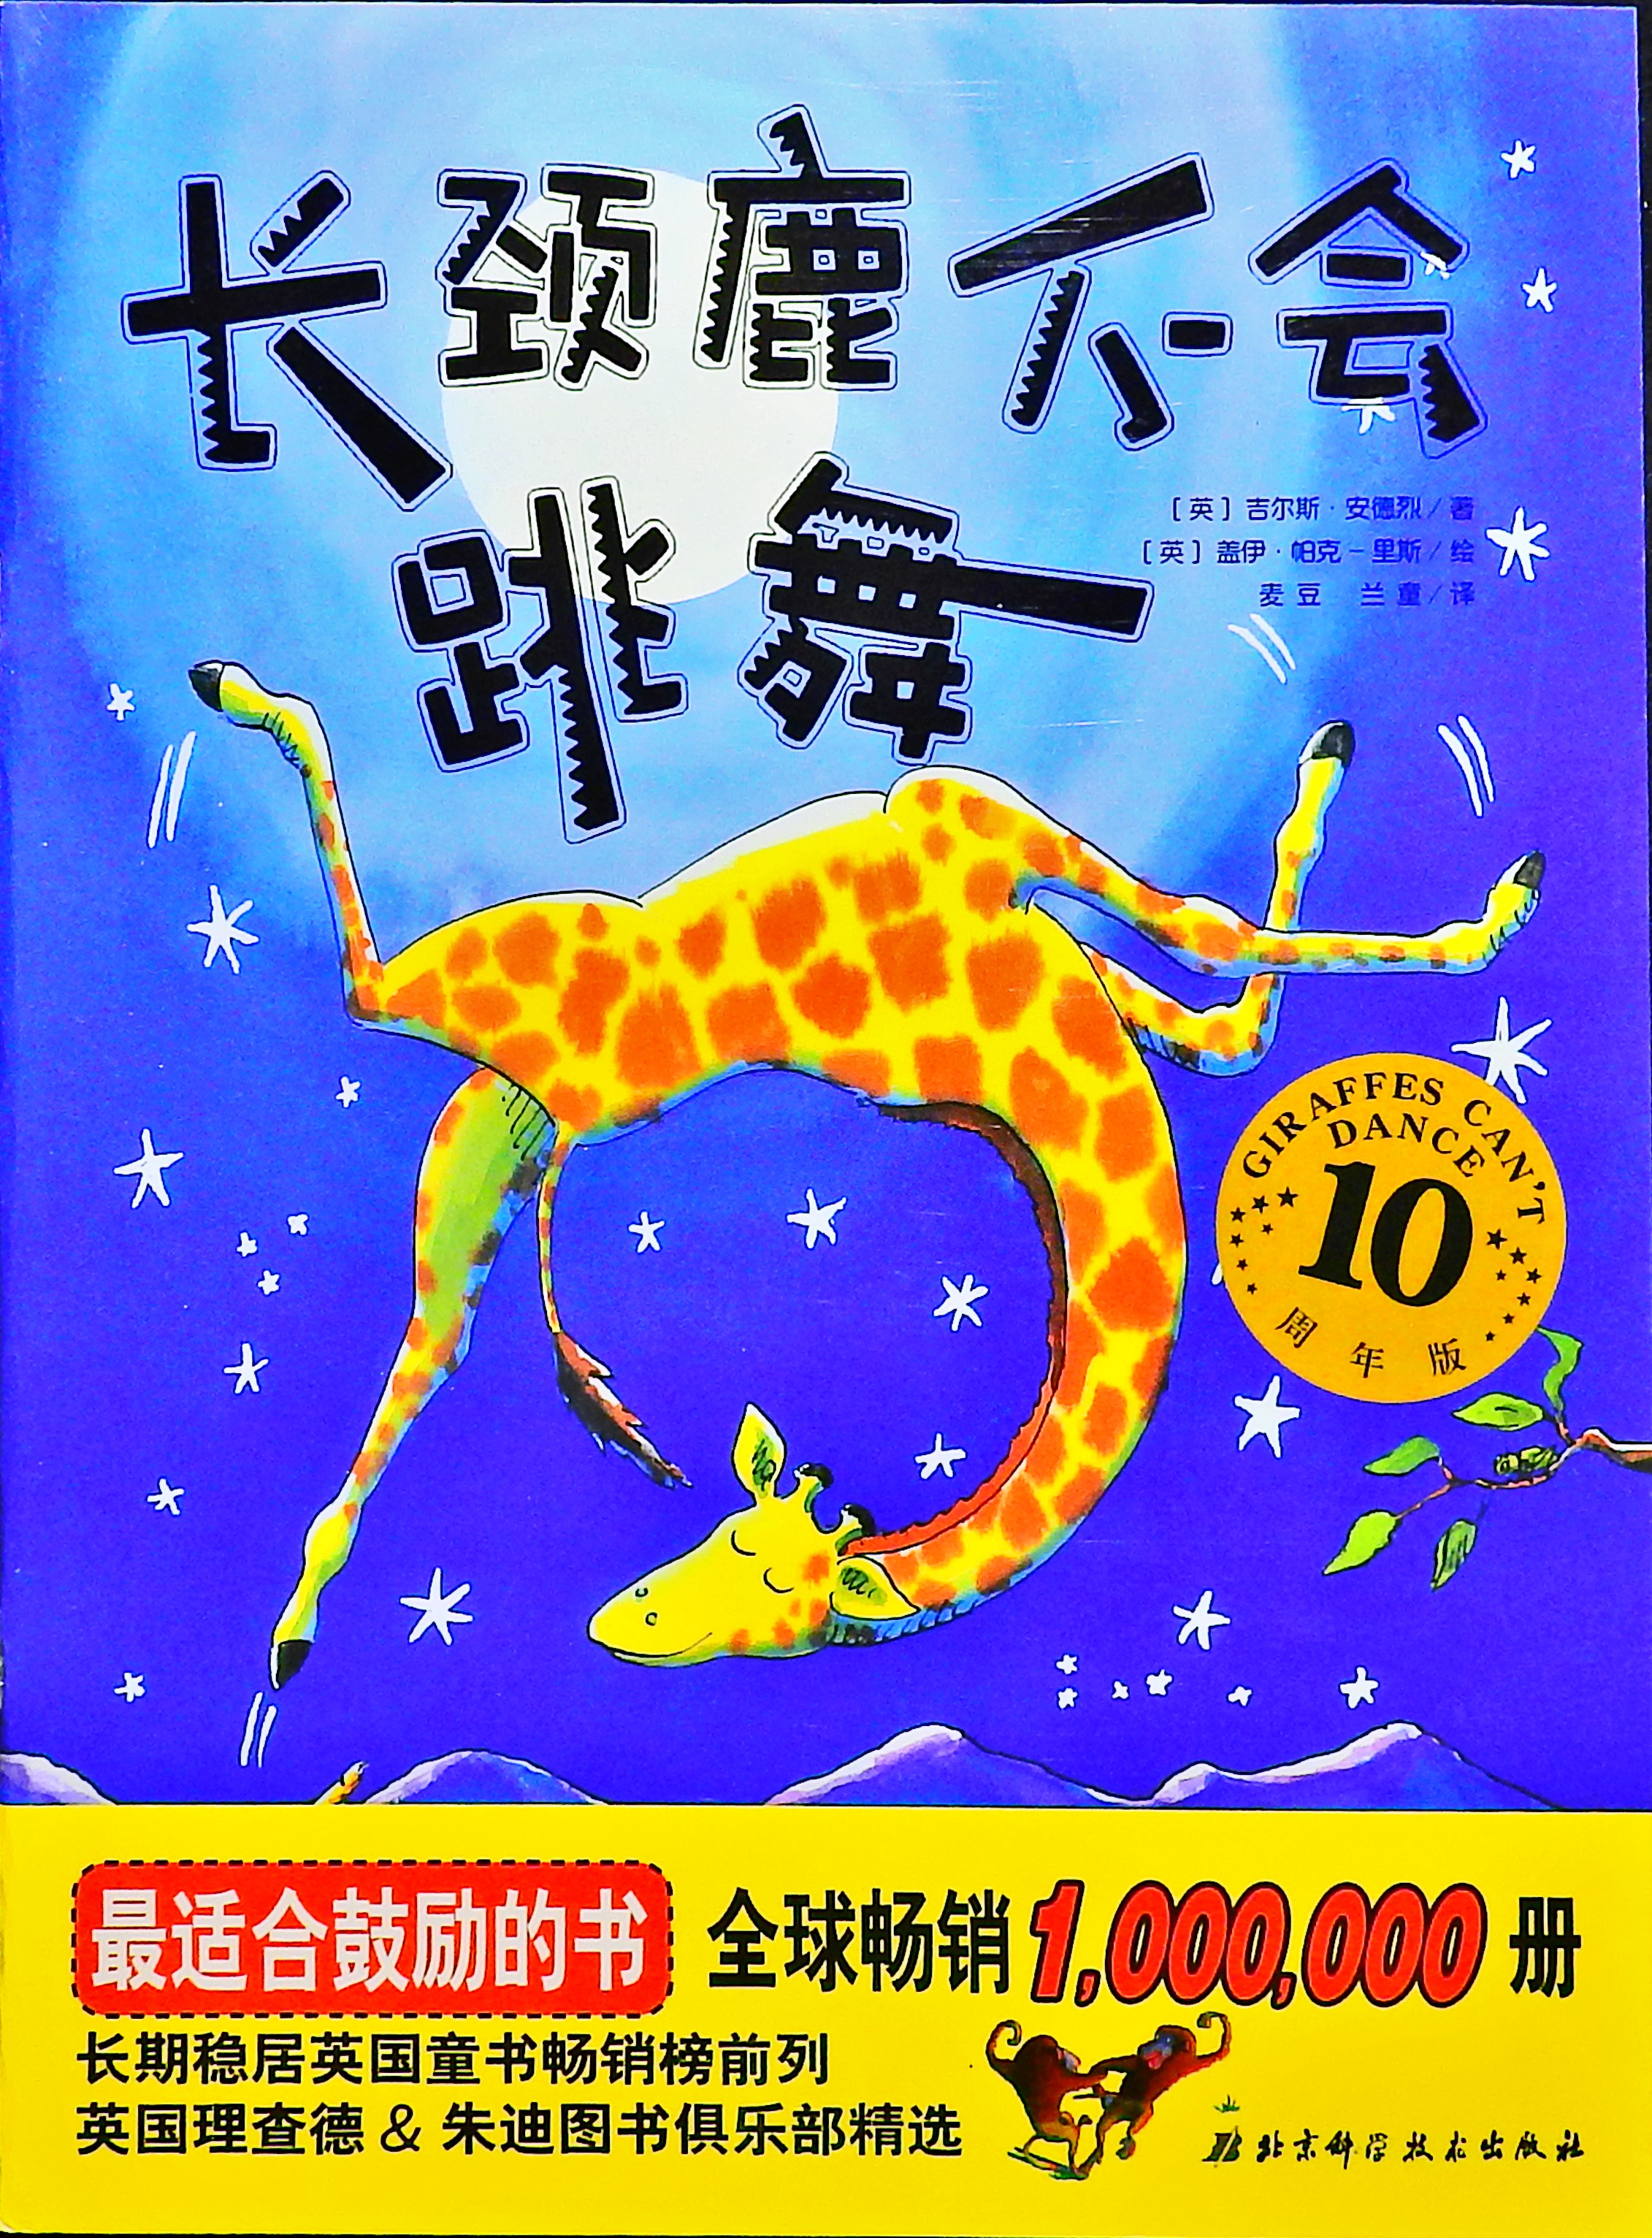 长颈鹿不会跳舞 (01),绘本,绘本故事,绘本阅读,故事书,童书,图画书,课外阅读